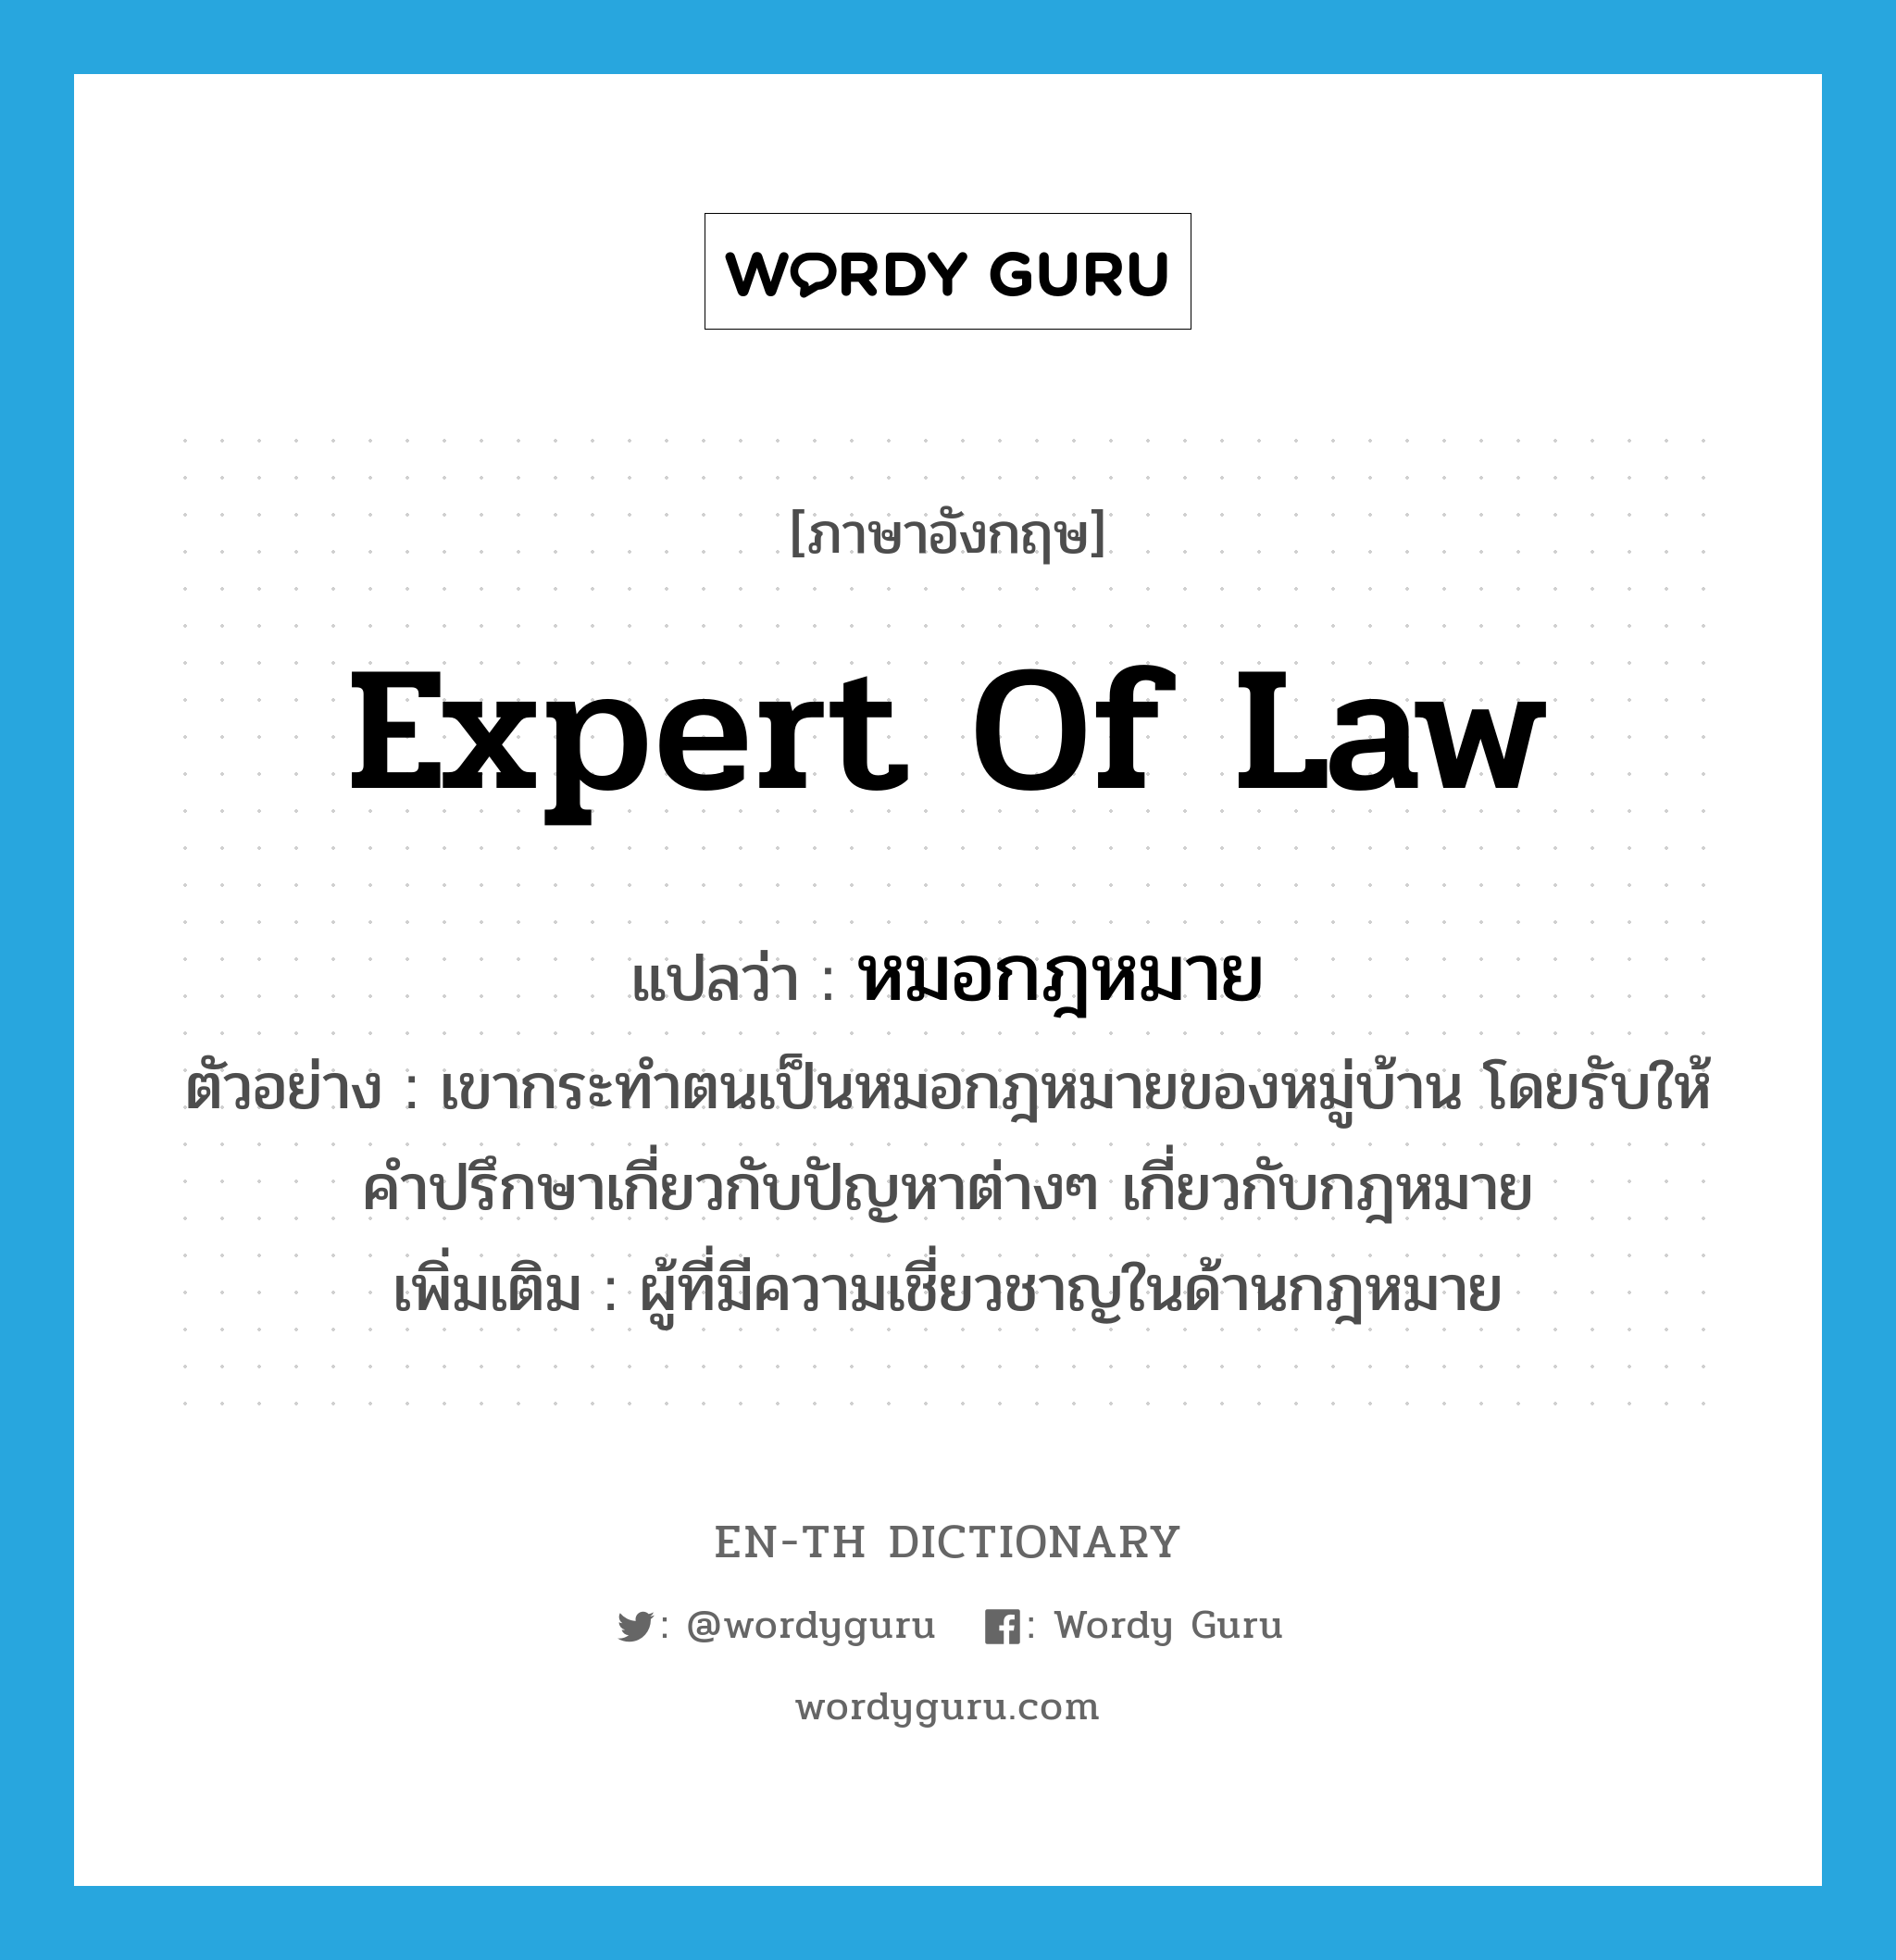 หมอกฎหมาย ภาษาอังกฤษ?, คำศัพท์ภาษาอังกฤษ หมอกฎหมาย แปลว่า expert of law ประเภท N ตัวอย่าง เขากระทำตนเป็นหมอกฎหมายของหมู่บ้าน โดยรับให้คำปรึกษาเกี่ยวกับปัญหาต่างๆ เกี่ยวกับกฎหมาย เพิ่มเติม ผู้ที่มีความเชี่ยวชาญในด้านกฎหมาย หมวด N